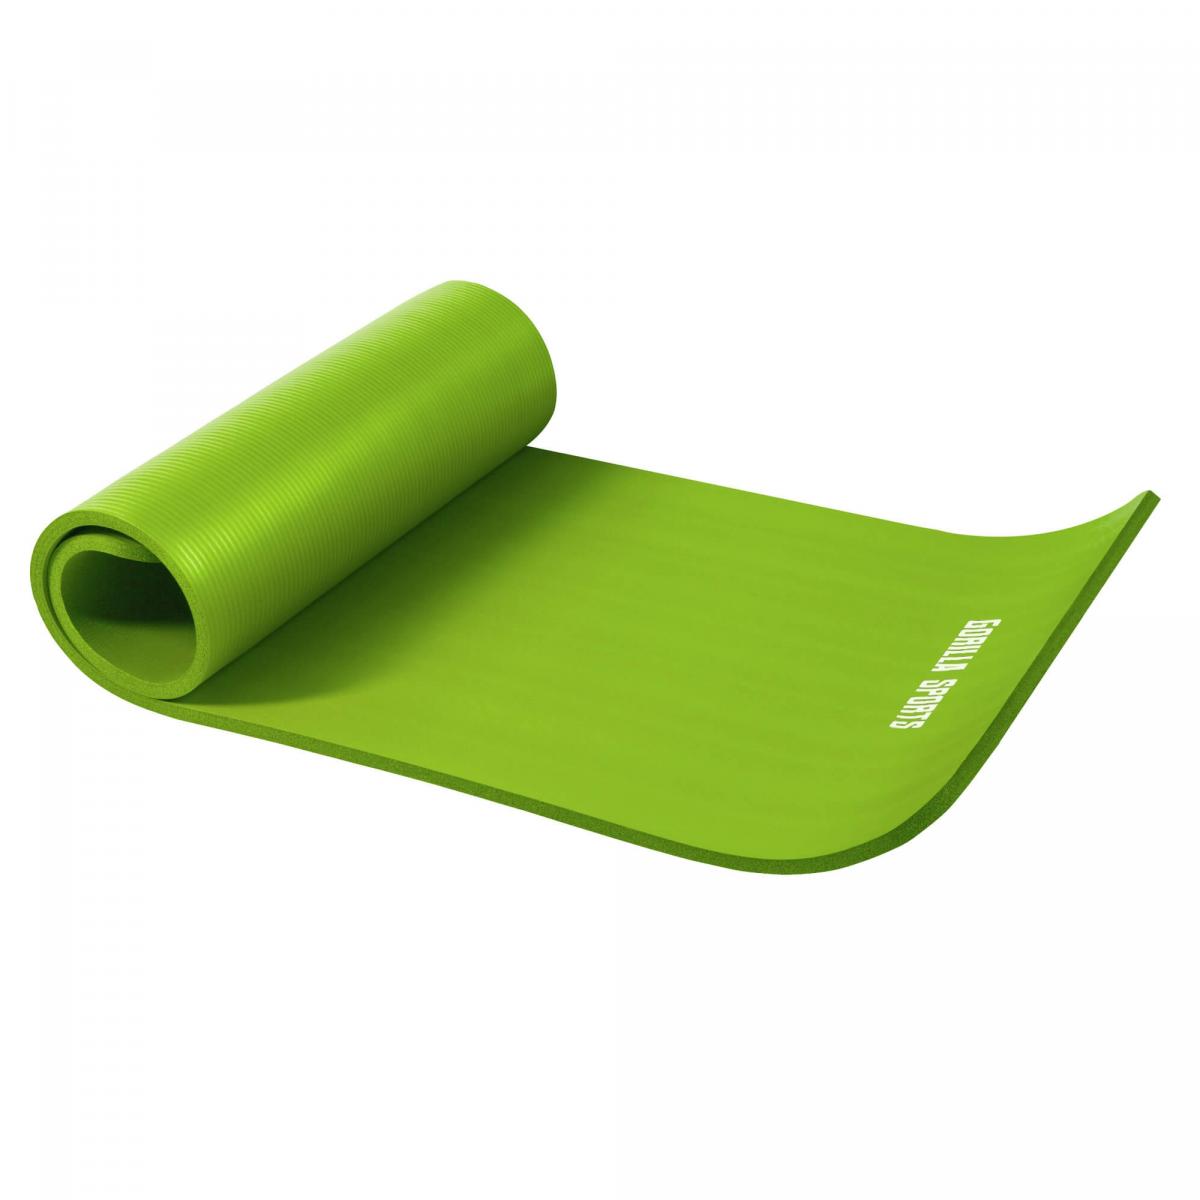 Petit tapis de yoga en mousse - 190 x 60 x 1,5 cm (Yoga - Pilates - sport Ã domicile) Vert Citron